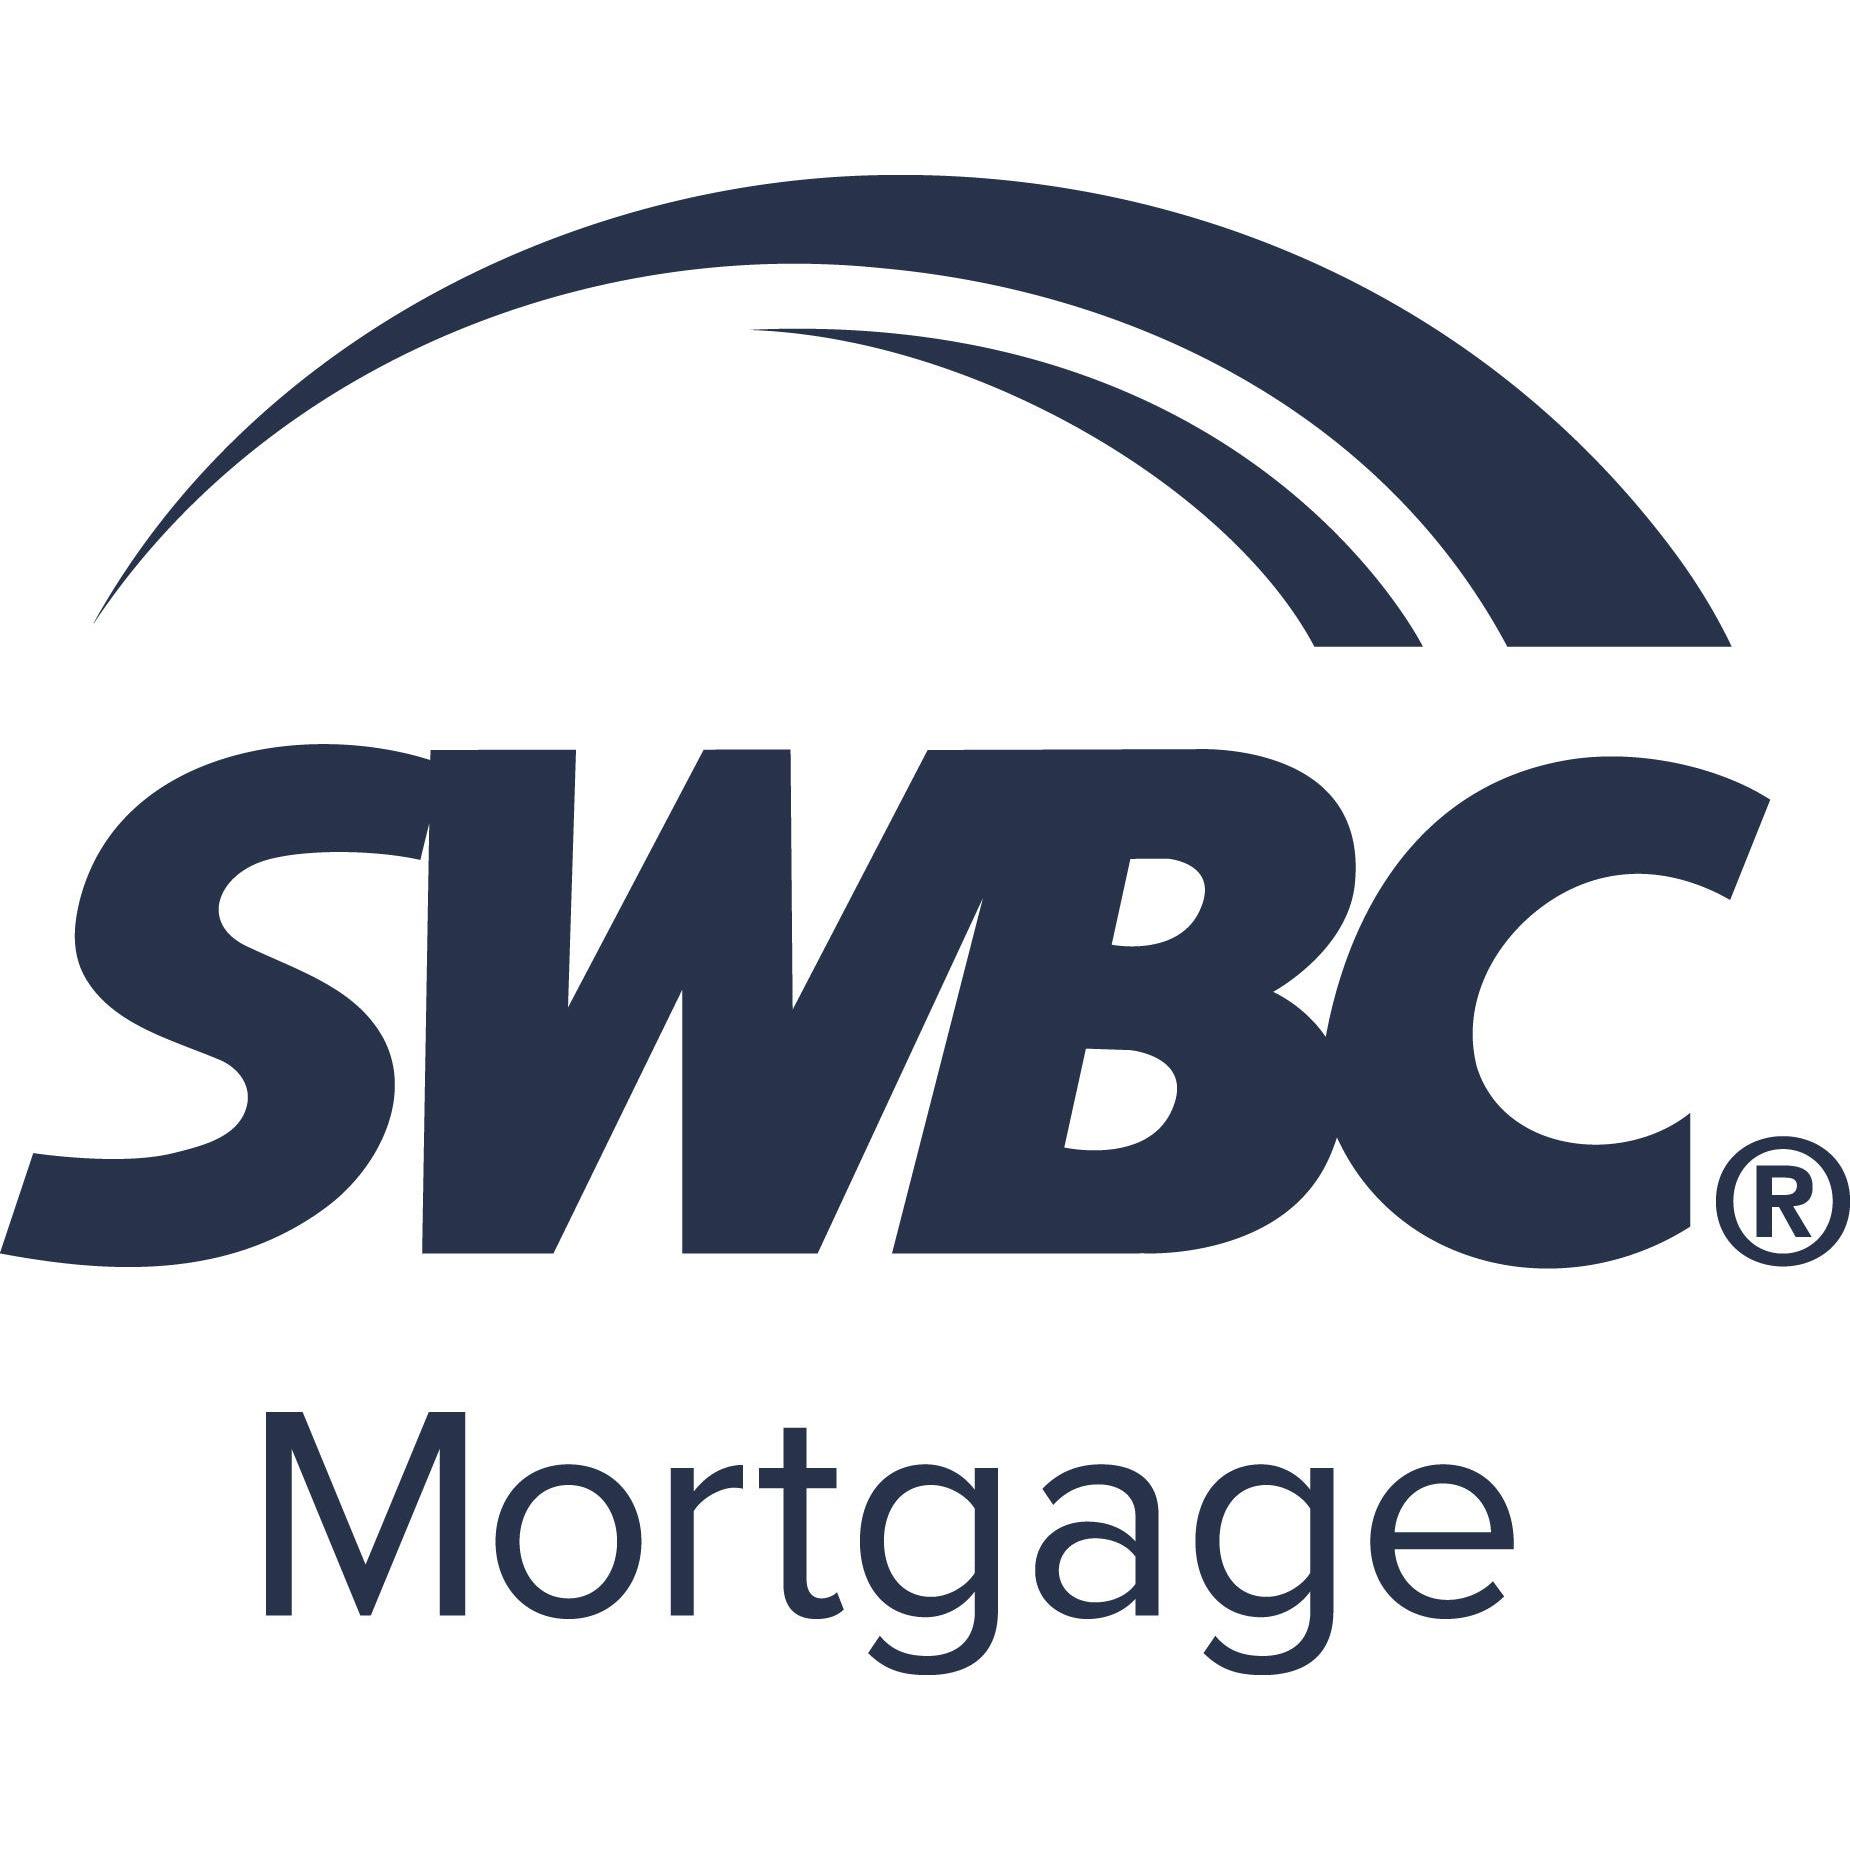 William Brennen, SWBC Mortgage